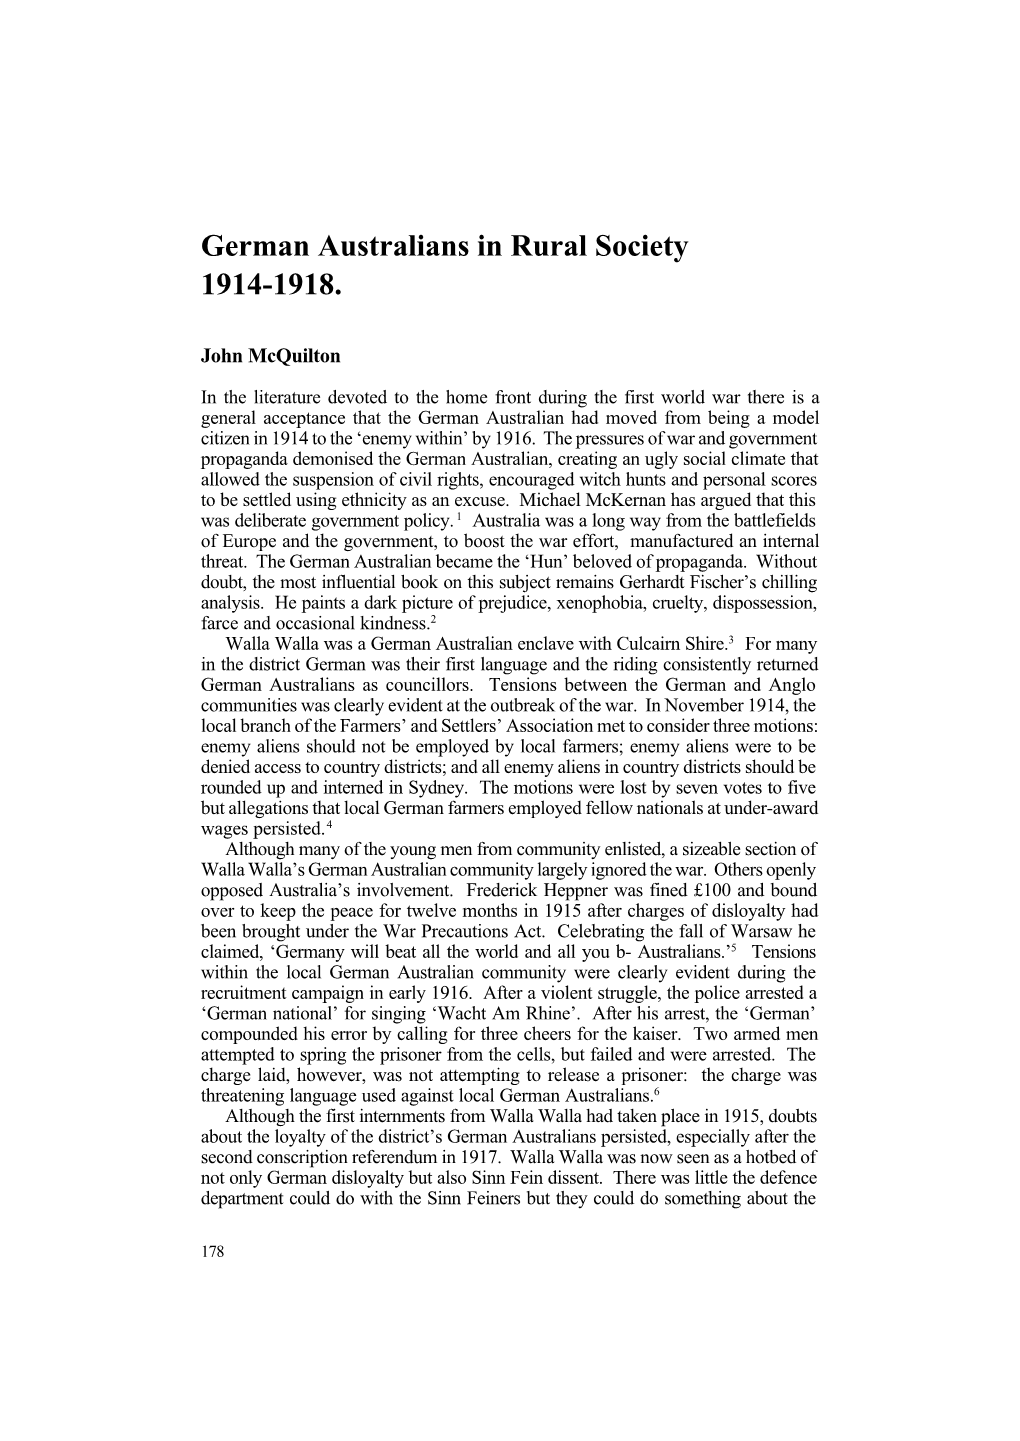 German Australians in Rural Society 1914-1918